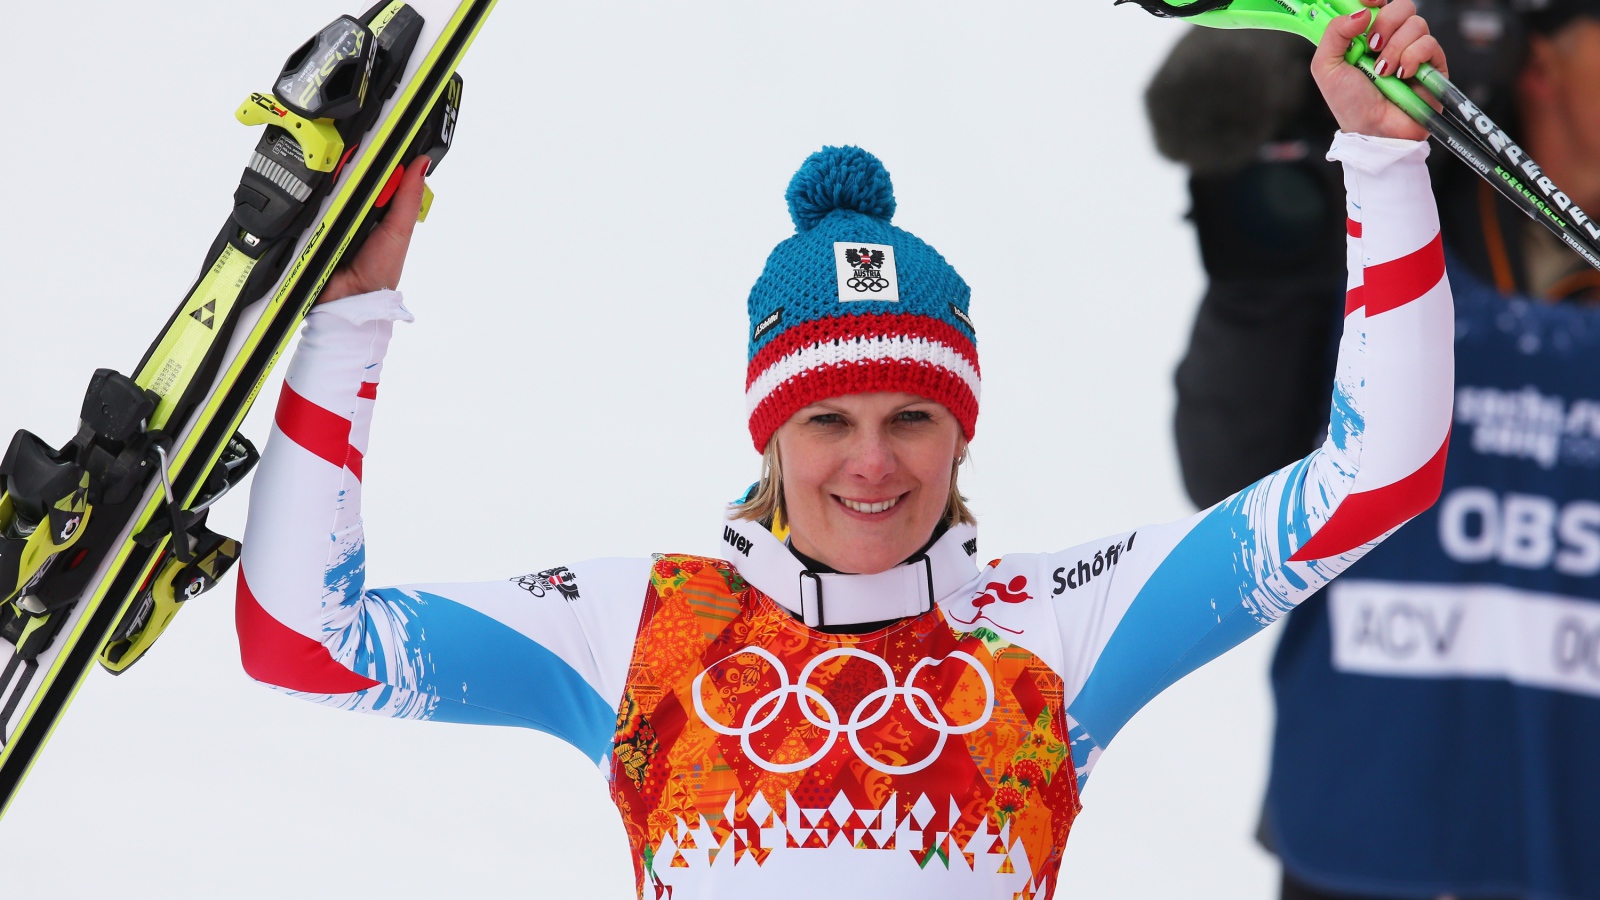 Австрийская лыжница Николь Хосп на олимпиаде в Сочи